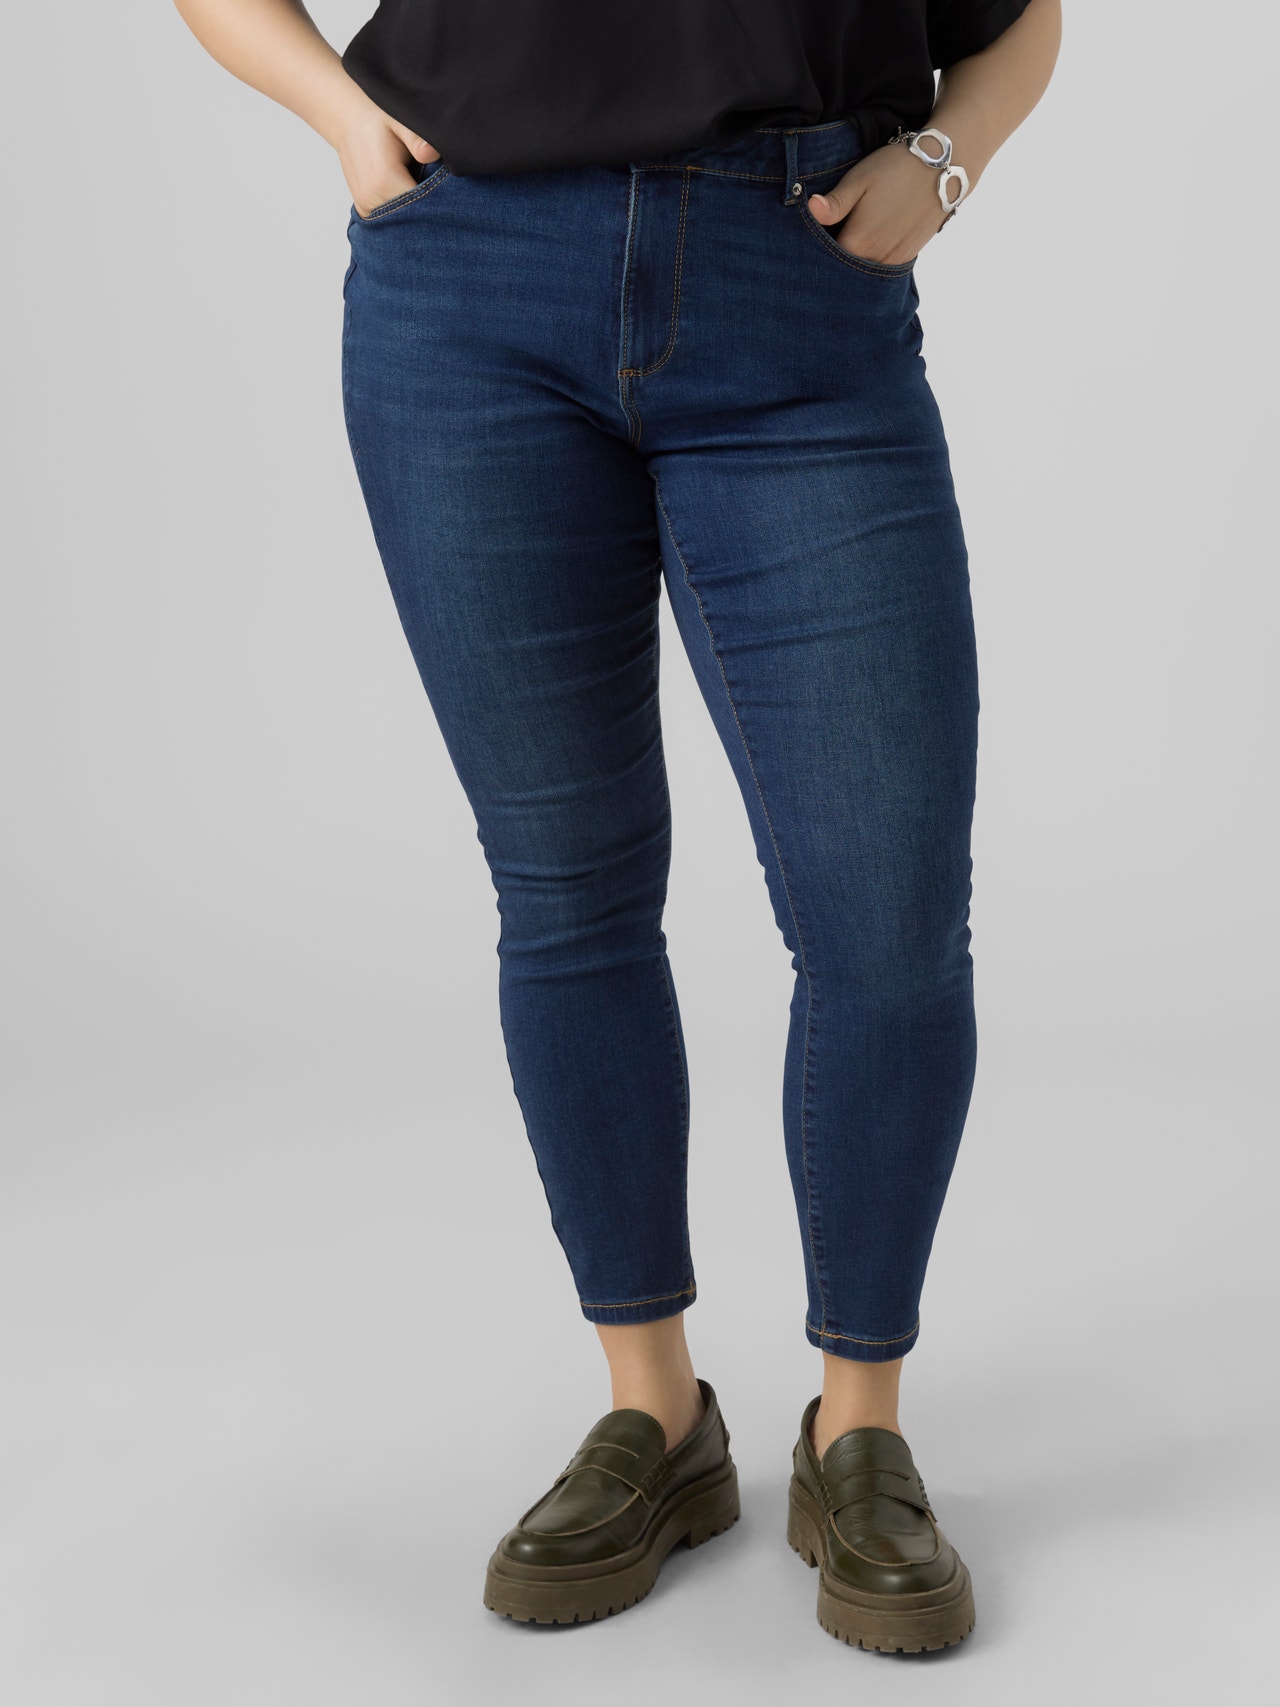 Vero Moda VMSOPHIA High rise Skinny Fit Jeans -Dark Blue Denim - 10297631